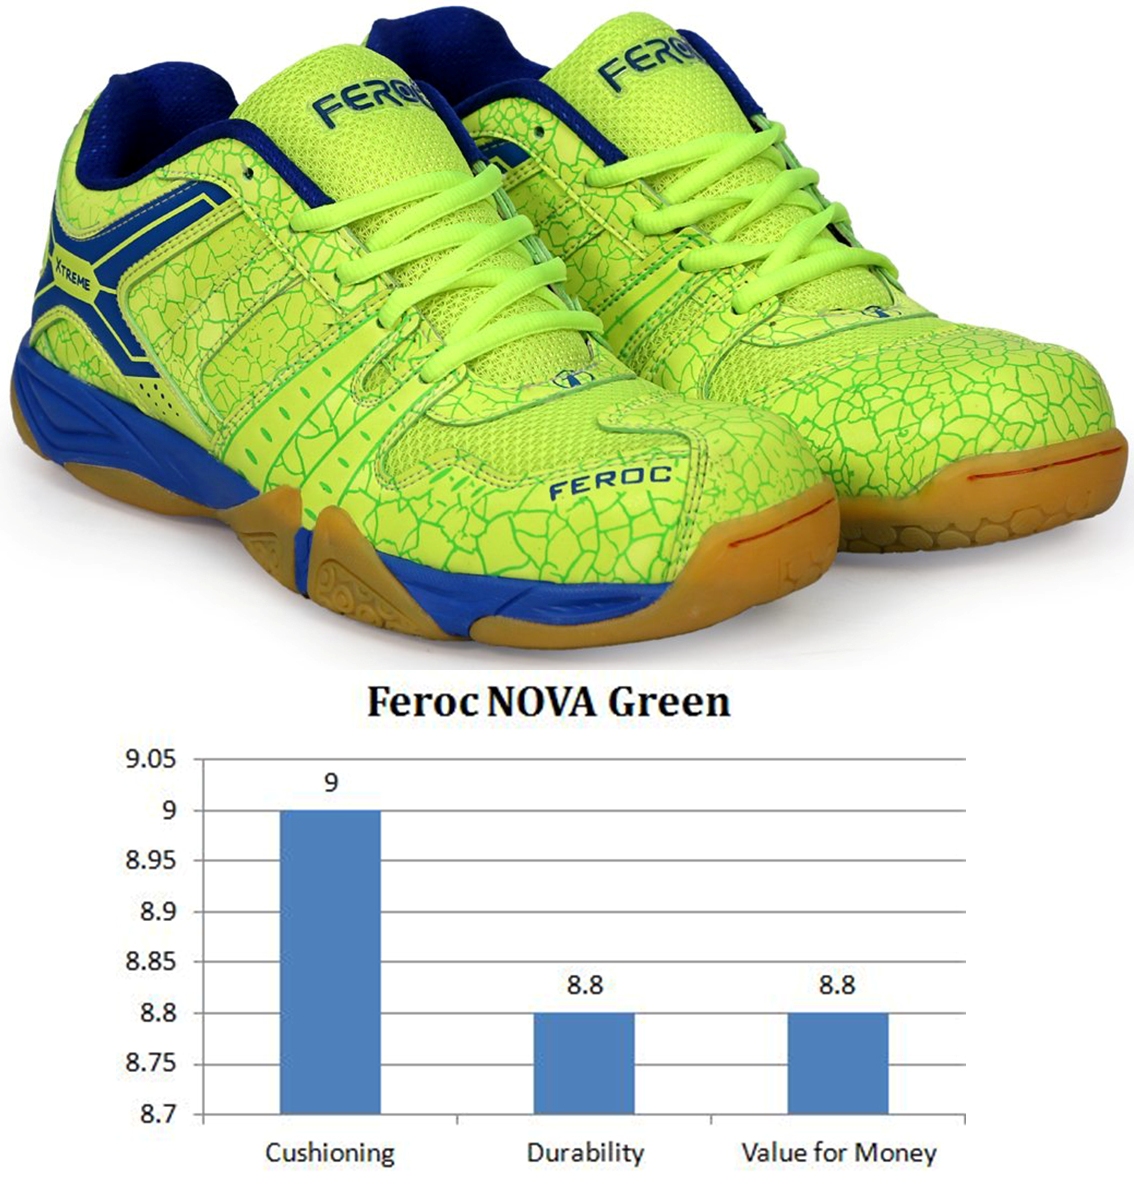 Feroc_Nova_Green_Badminton_Shoes_Khelmart